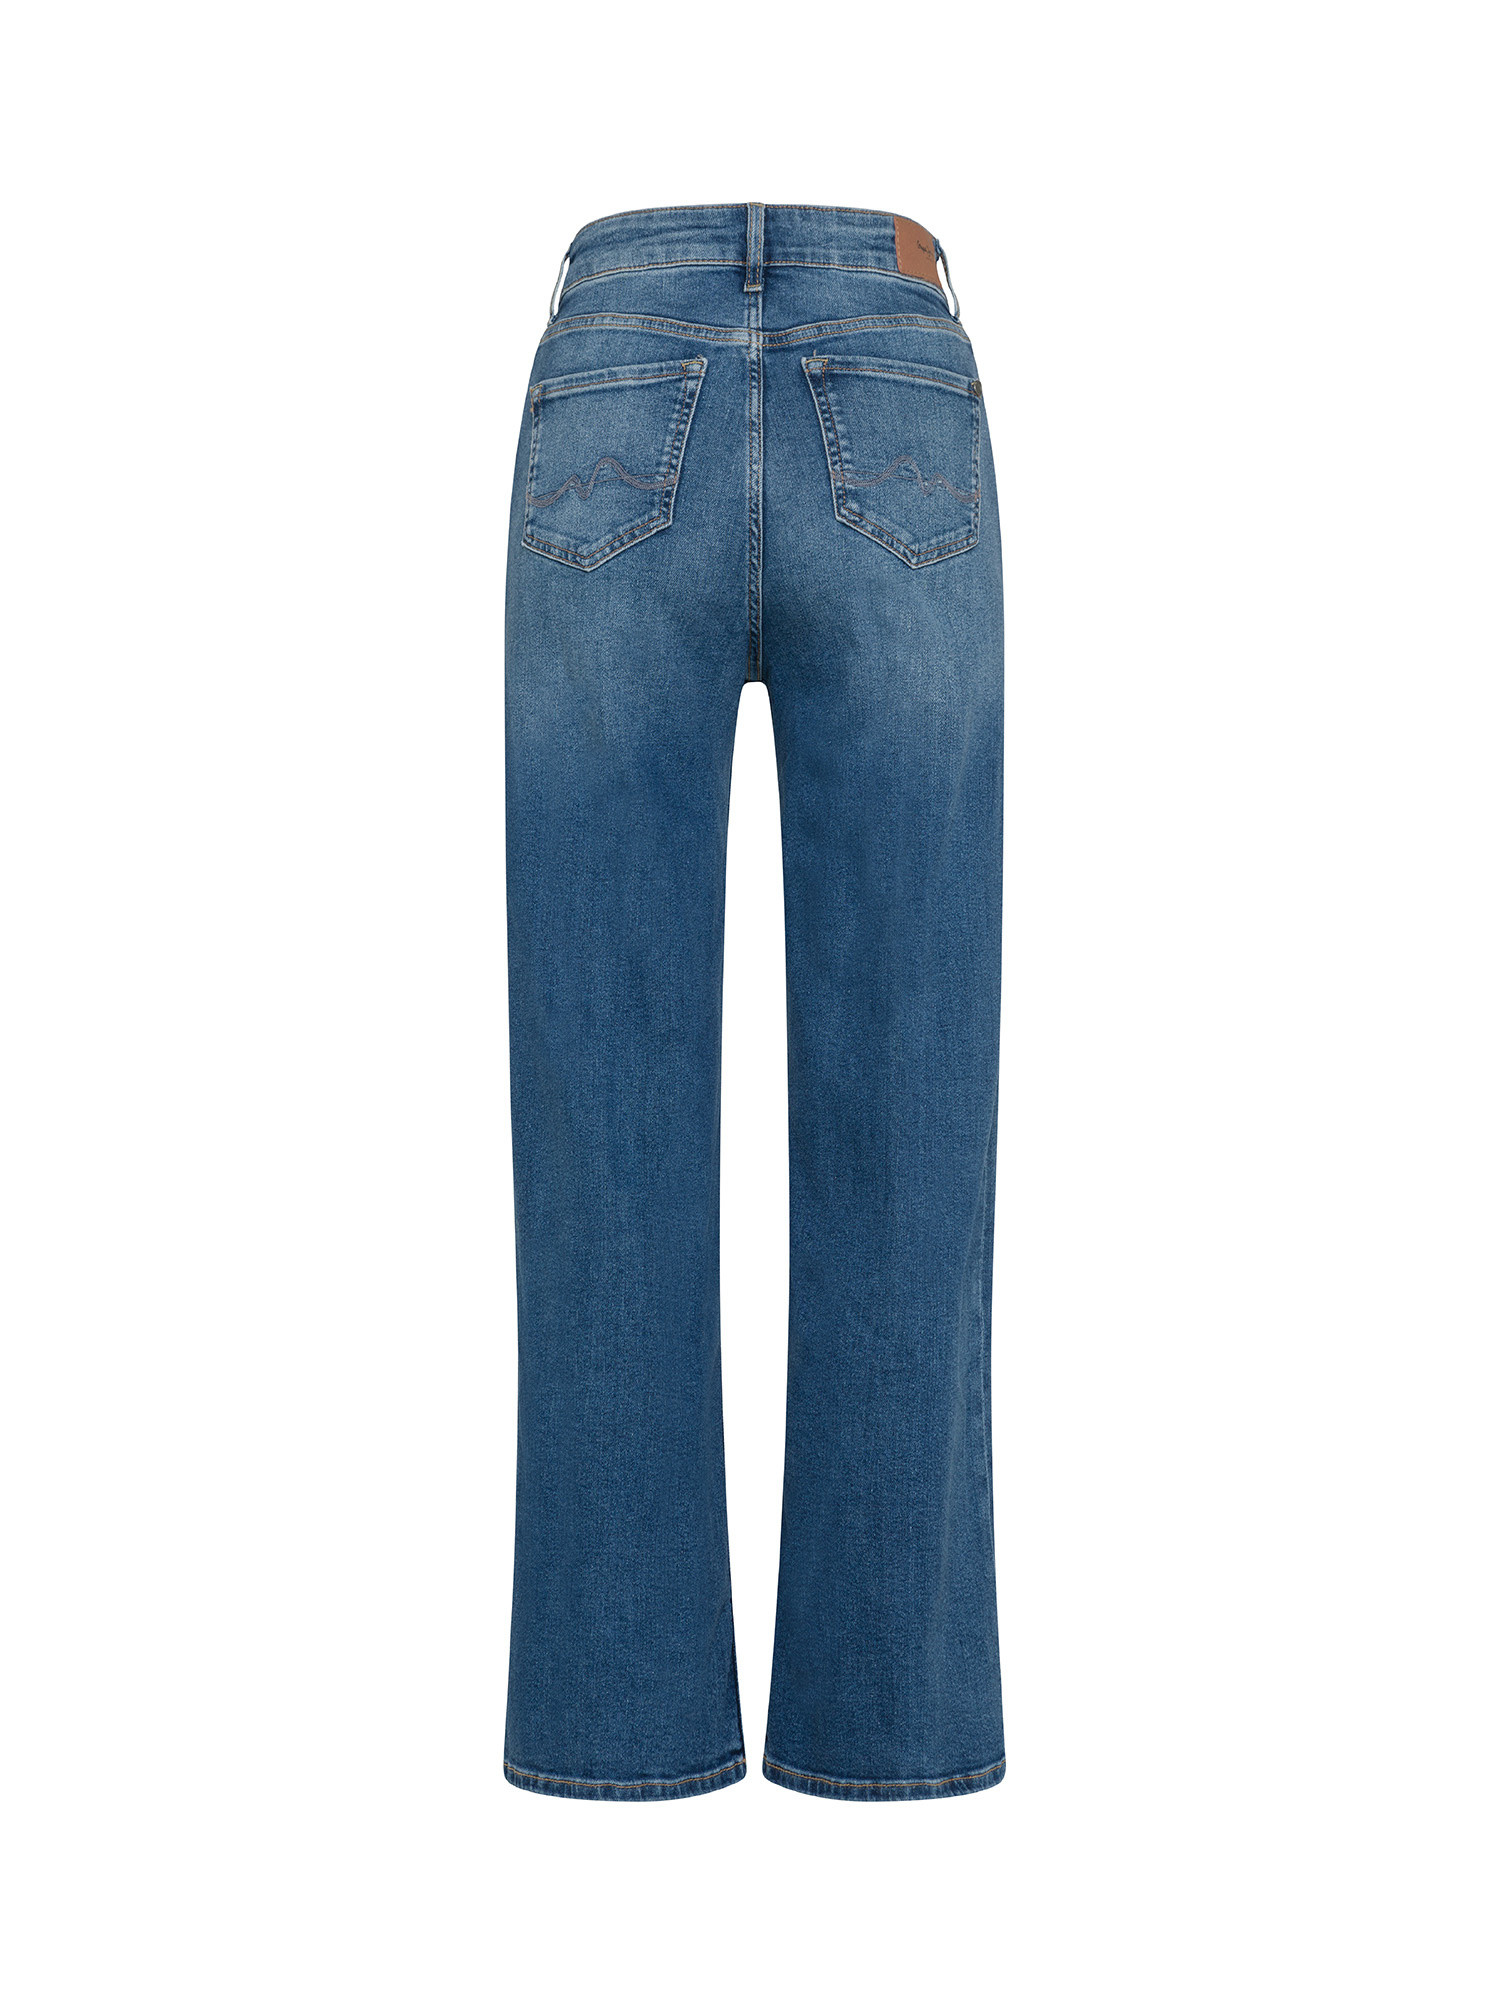 Pepe Jeans - Five pocket jeans, Denim, large image number 1